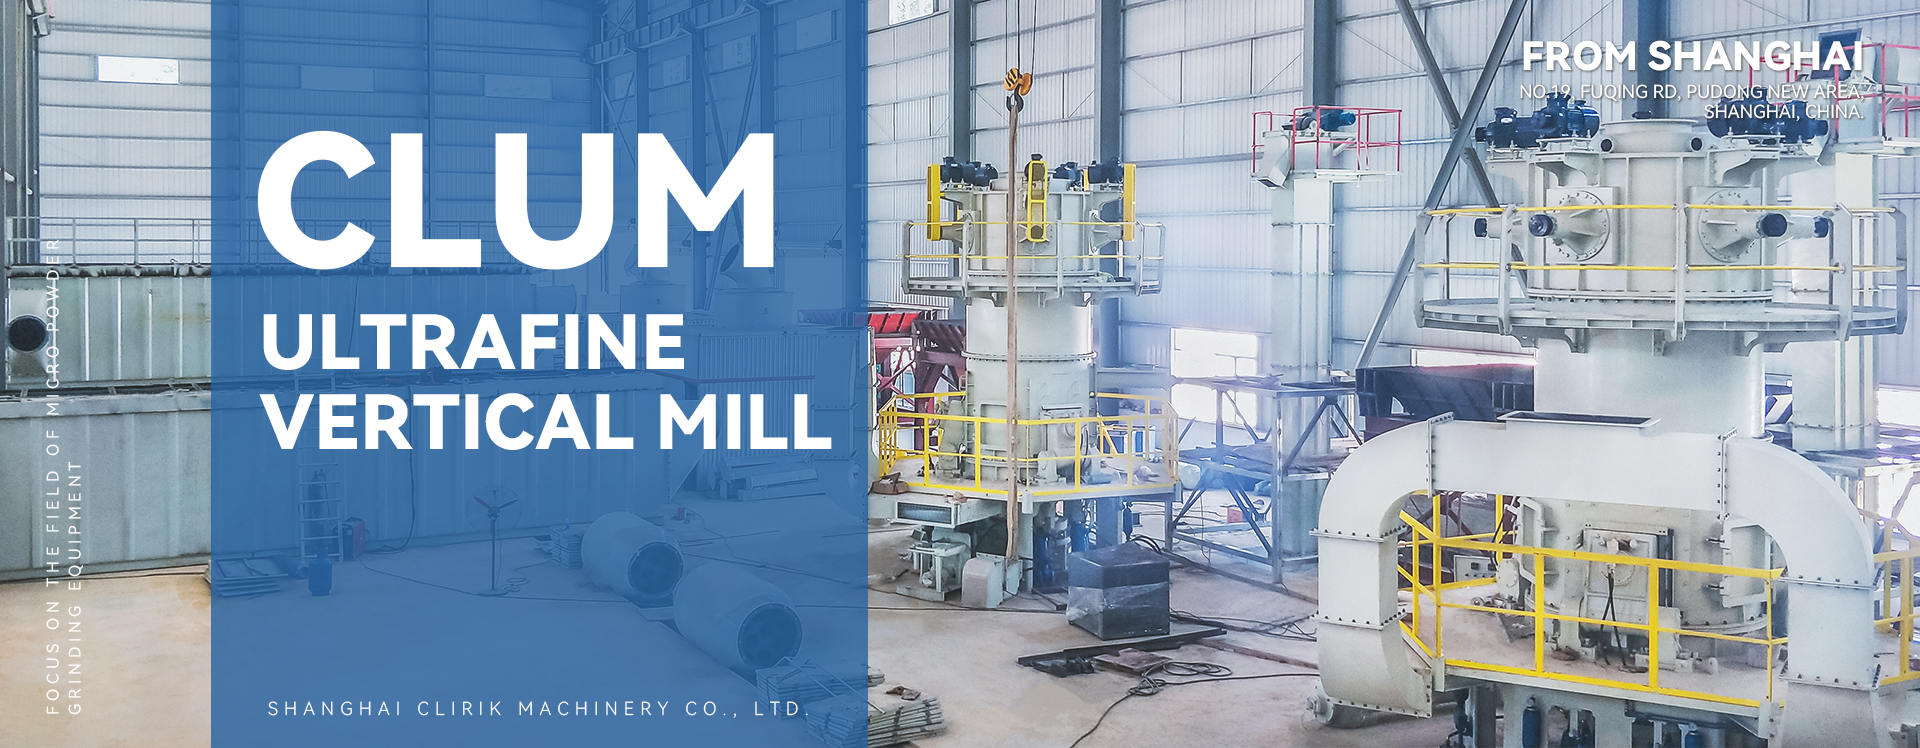 CLUM ultrafine vertical mill